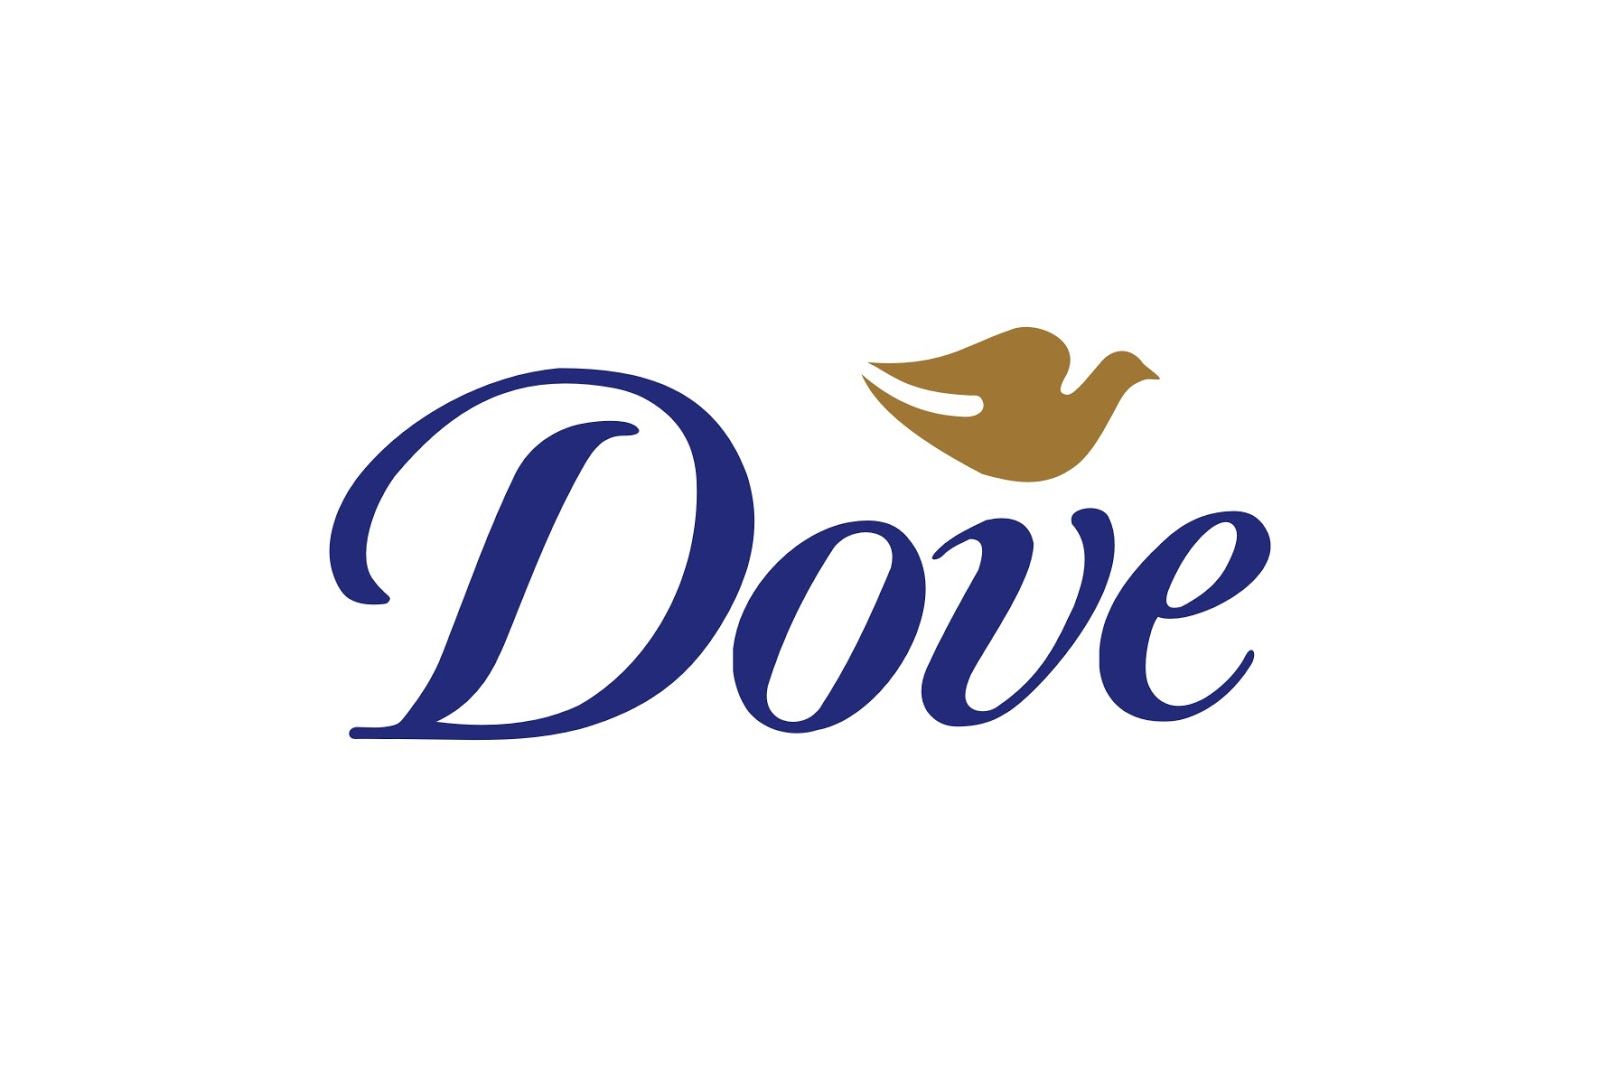 Thương hiệu Dove được hội chị em tin tưởng sử dụng (Nguồn: Internet)